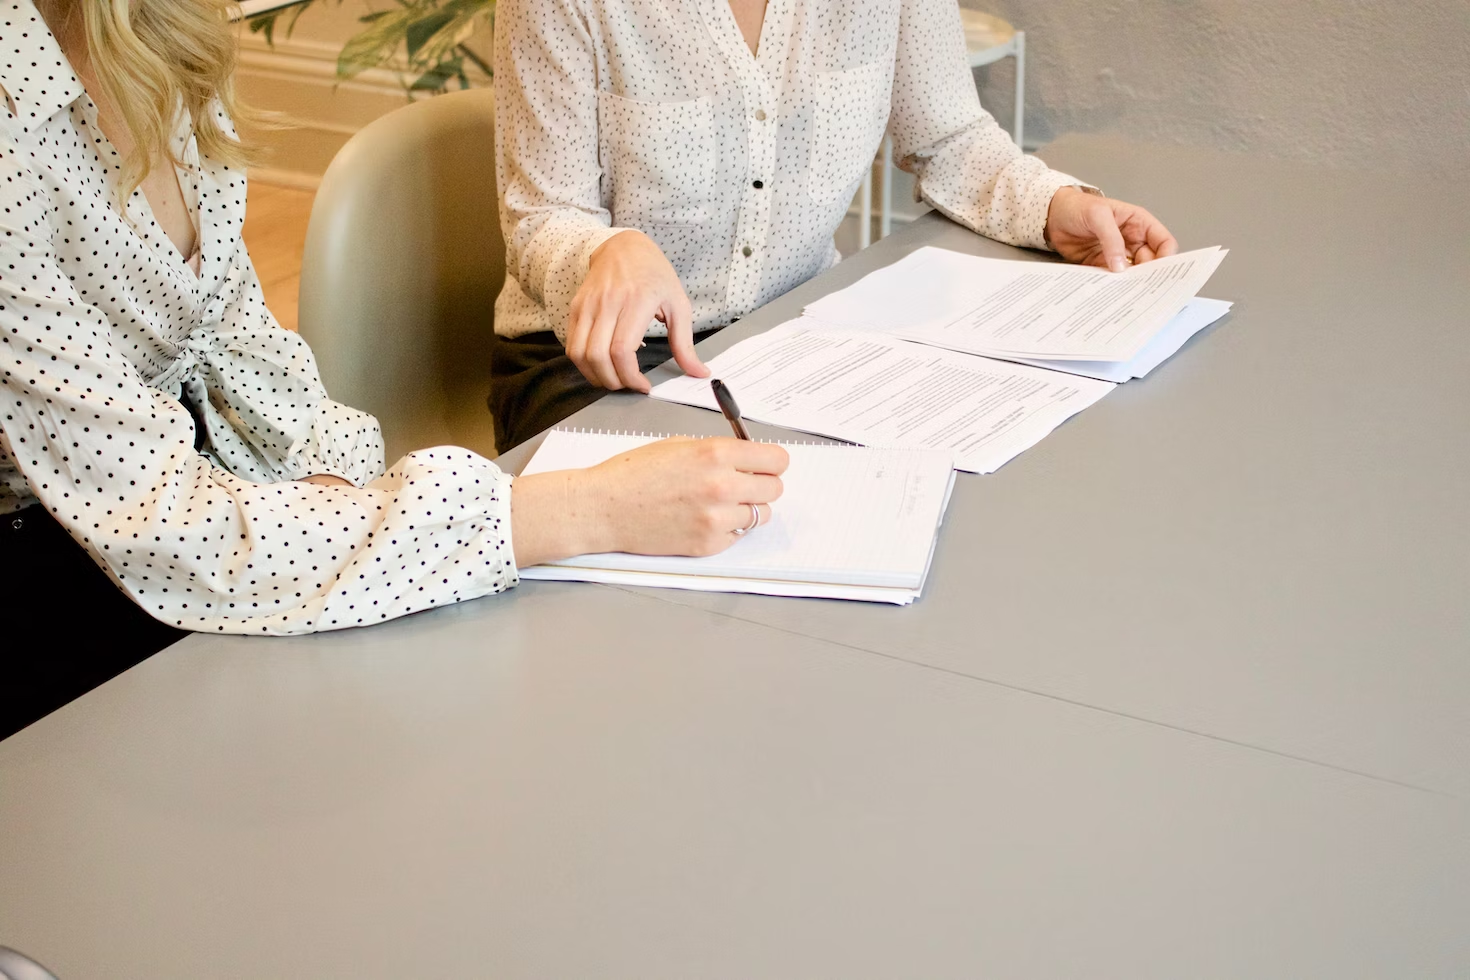 Femme avec une chemise blanche à pois noirs signant un document avec une femme avec la même chemise